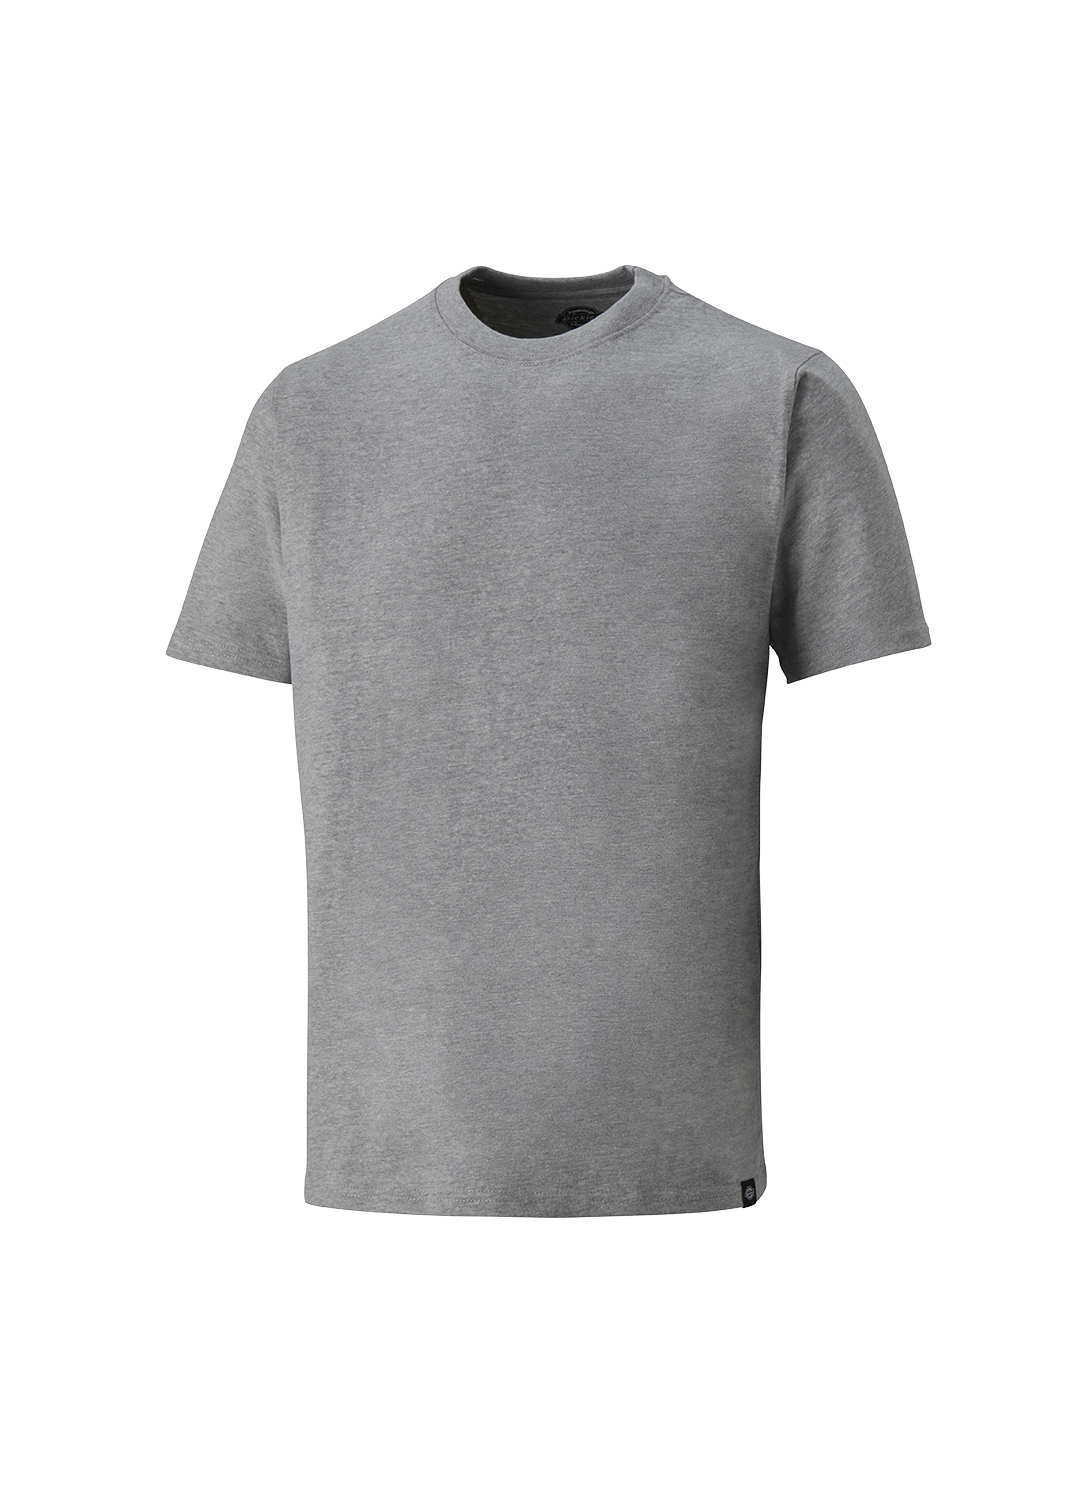 Dickies Unisex T-Shirt hellgrau, 100% Baumwolle